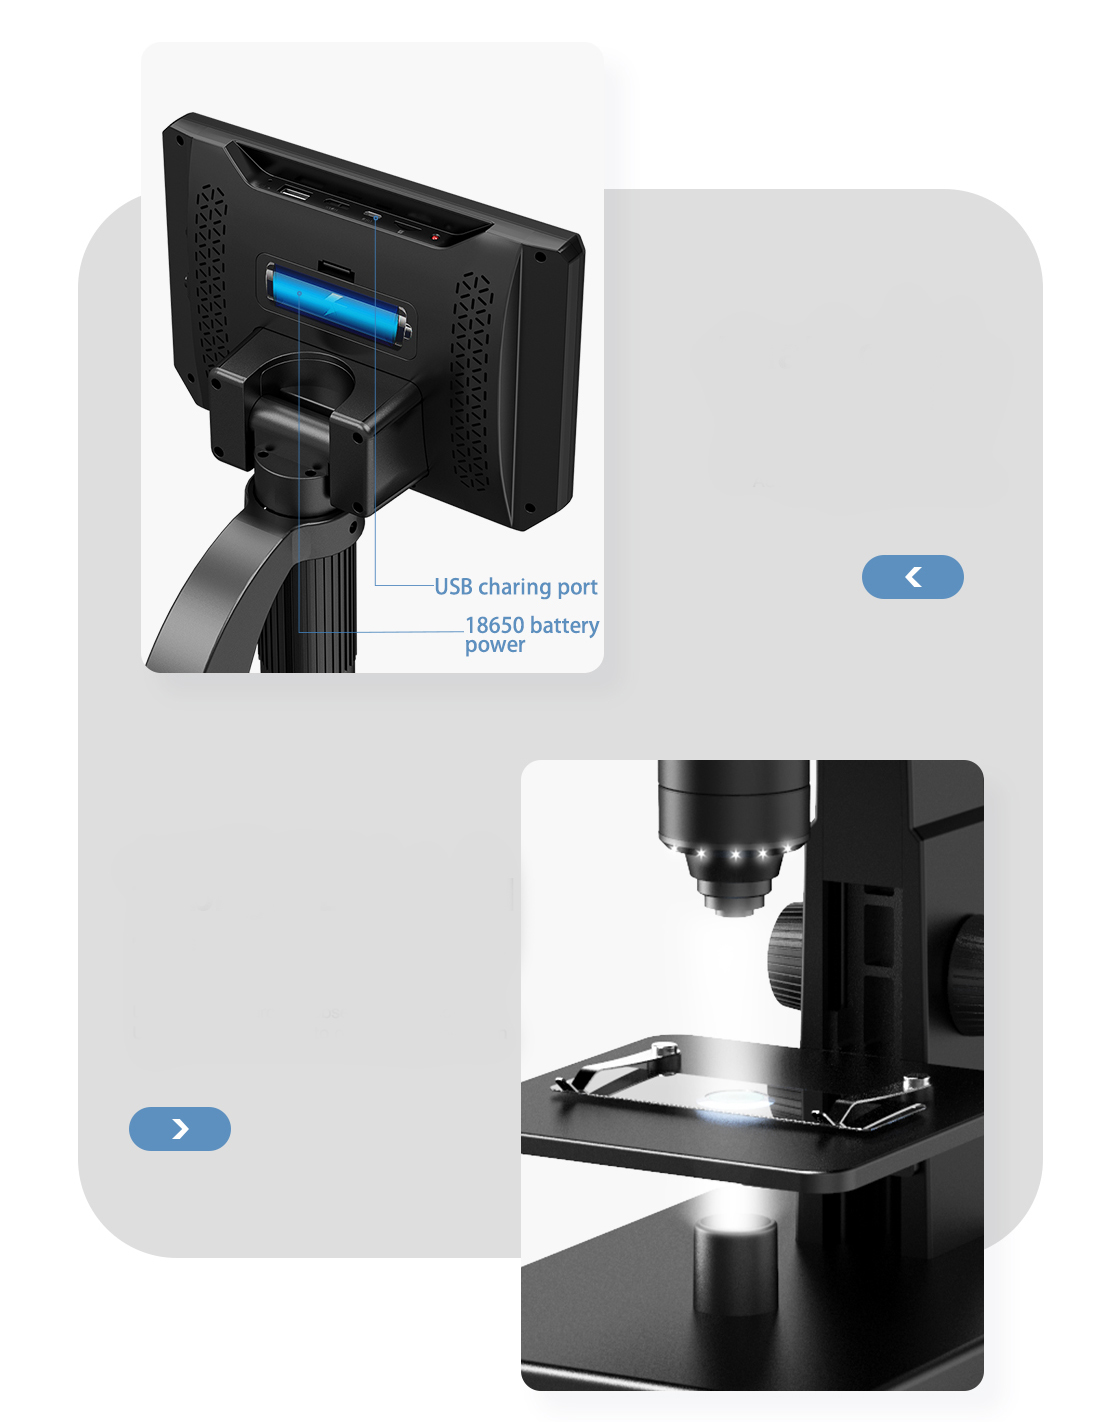 Mikroskop cyfrowy LCD 2000x + 10LED 1080P 12MPIX Załączone wyposażenie Soczewka  500x (obiektyw) Soczewka 200x (obiektyw) Ściereczka z mikrofibry Próbne preparaty biologiczne Kabel do ładowania USB Instrukcja obsługi Pudełko